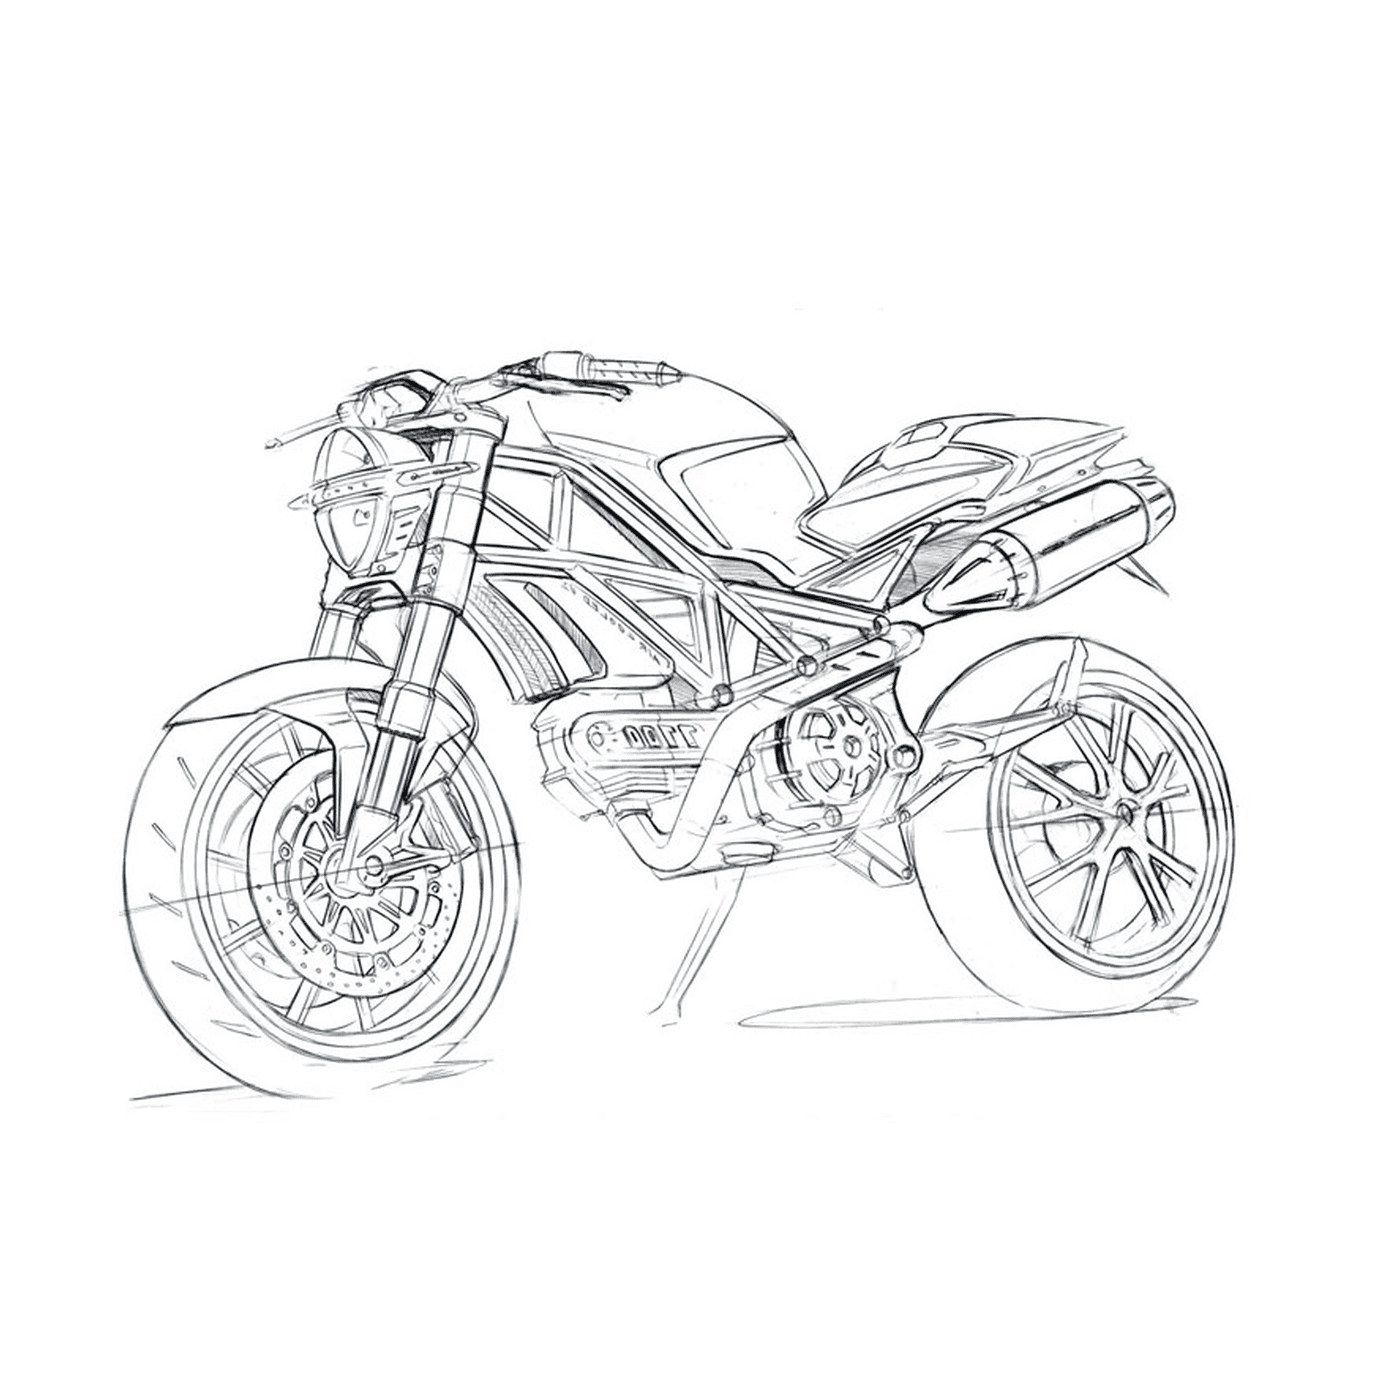  Motocicleta de Ducati no fundo branco 